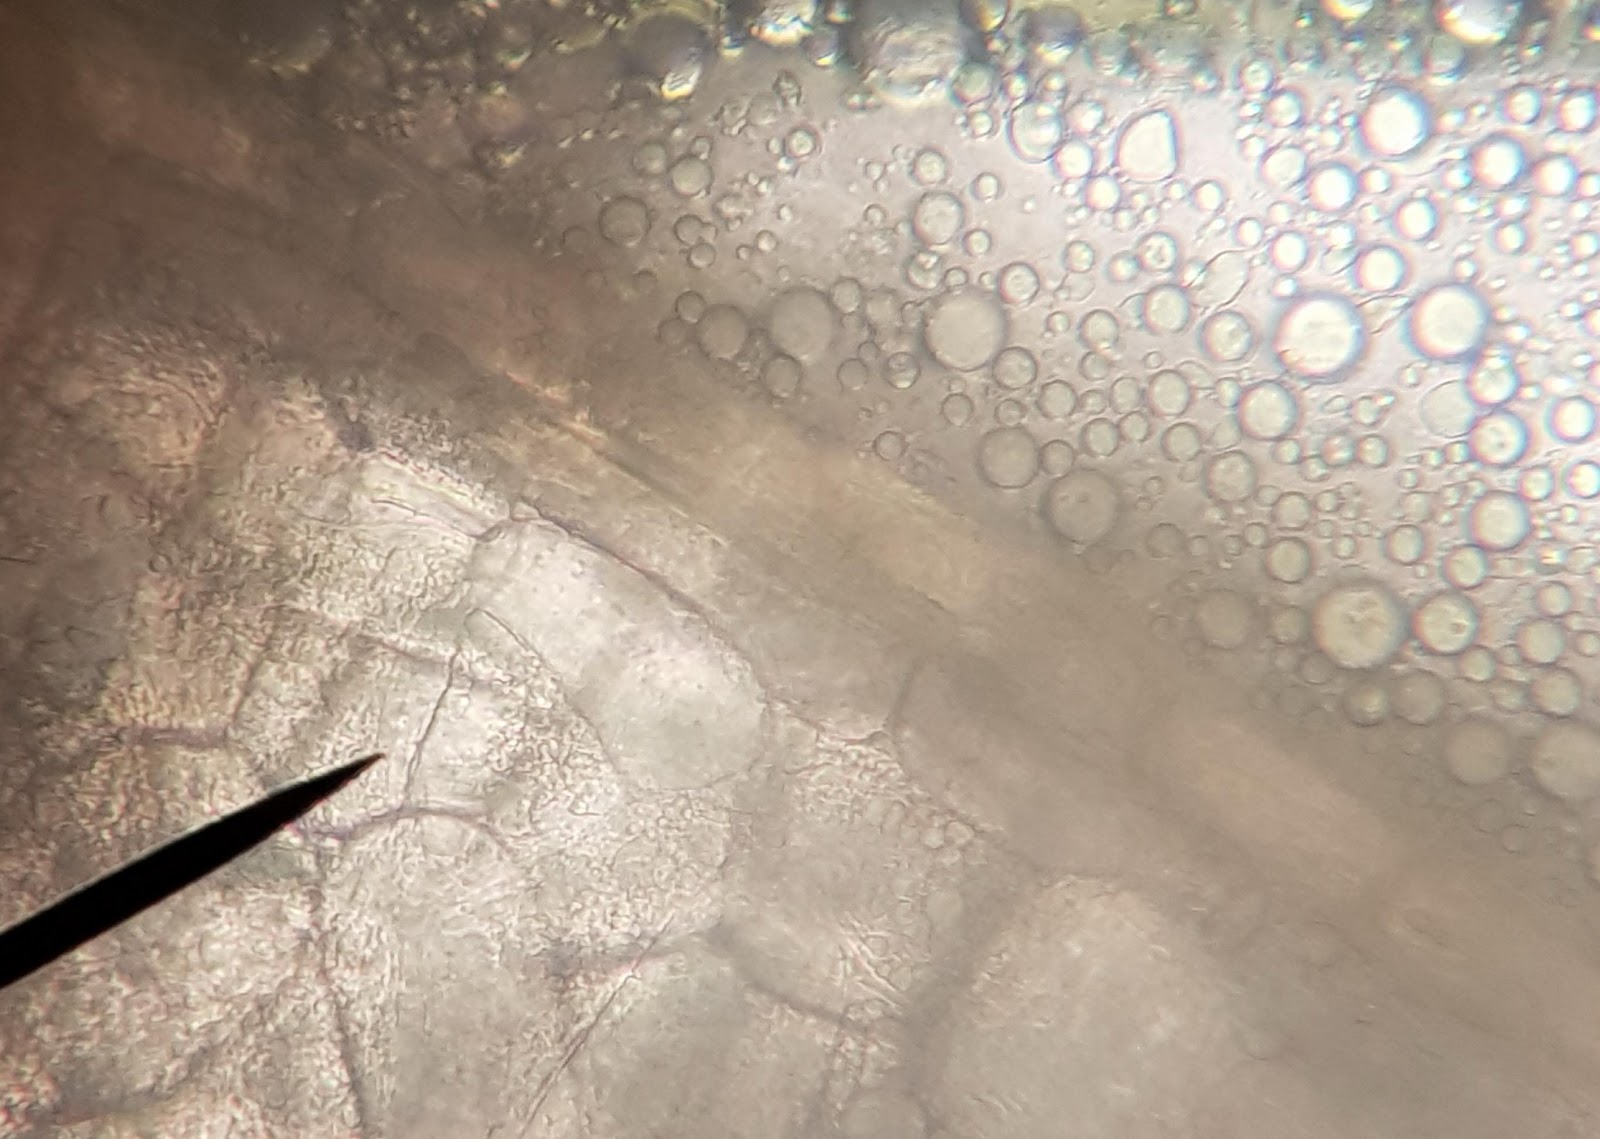 <b>Gouttelettes lipidiques observées au microscope optique x100 après écrasement d’une coupe de cerneau de noix</b><div><i>©RS.2020</i><b><br></b></div>